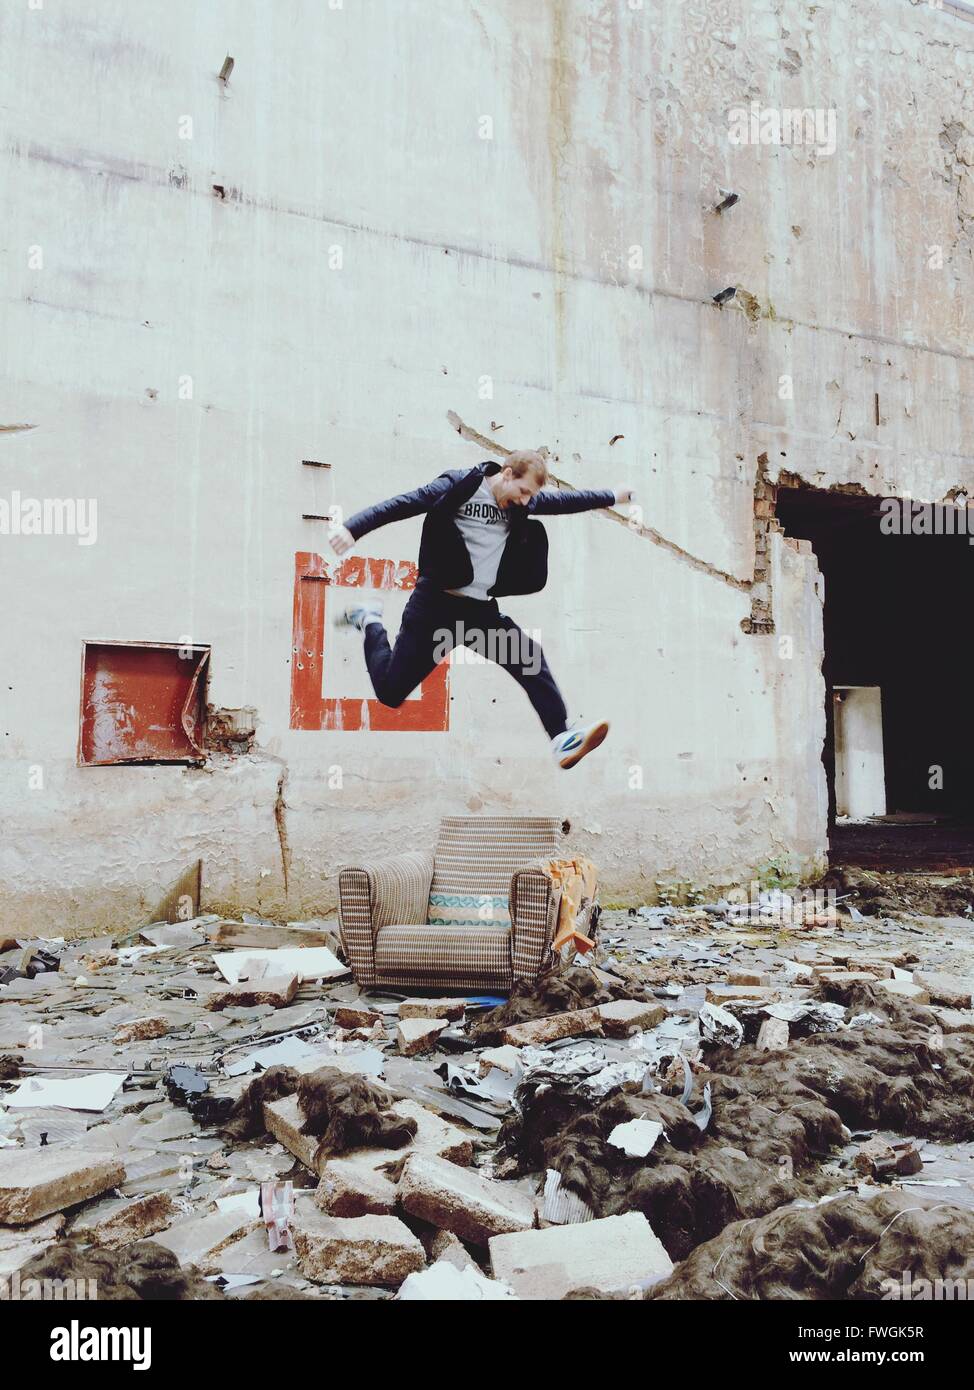 Jeune homme saute au-dessus de présidence en dehors bâtiment abandonné Banque D'Images